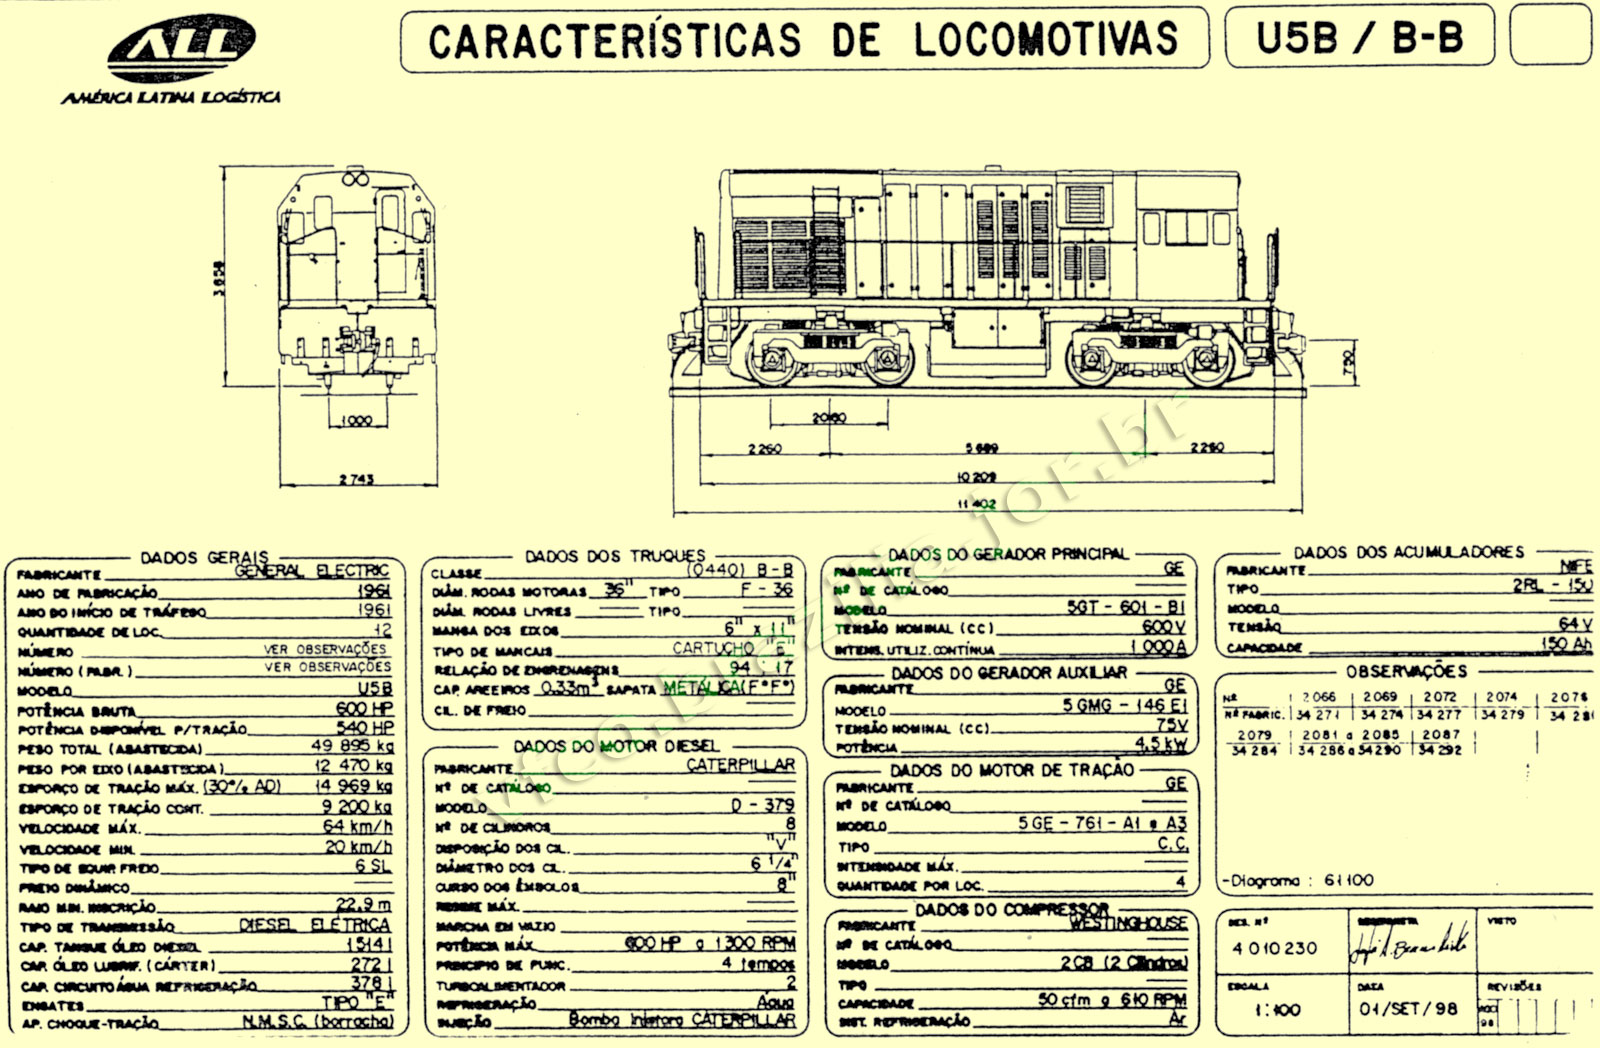 Desenho e especificações da Locomotiva U5B da ferrovia ALL